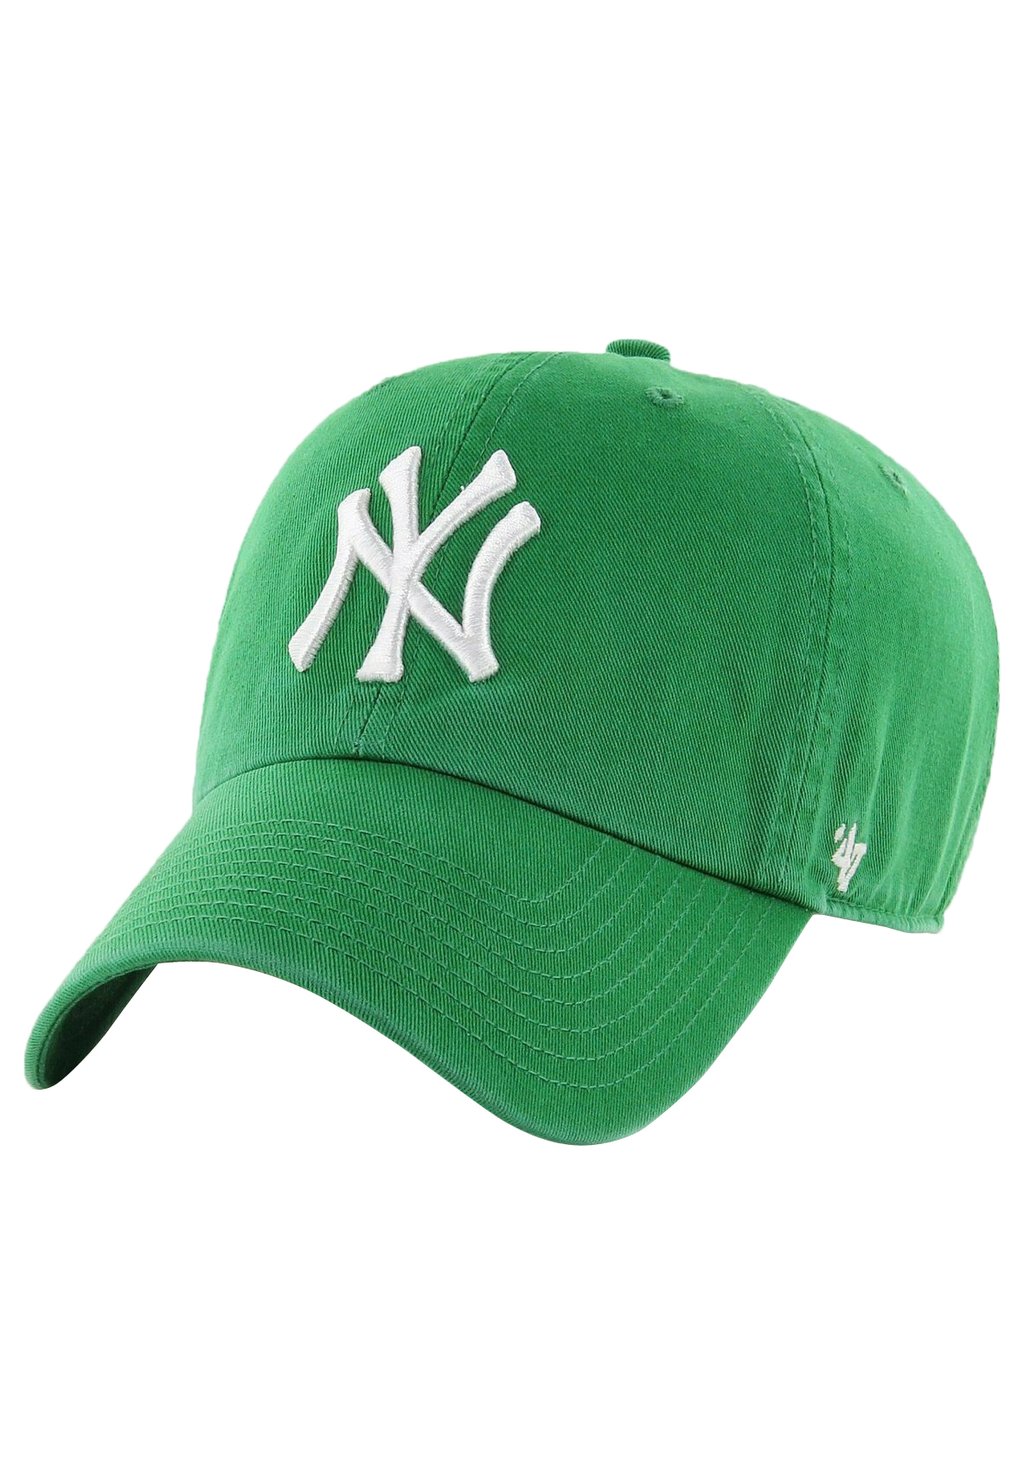 Бейсболка MLB NEW YORK YANKEES '47, цвет celtic green celtic теплообменник отопления для котлов celtic ds platinum 2 13 2 16 селтик